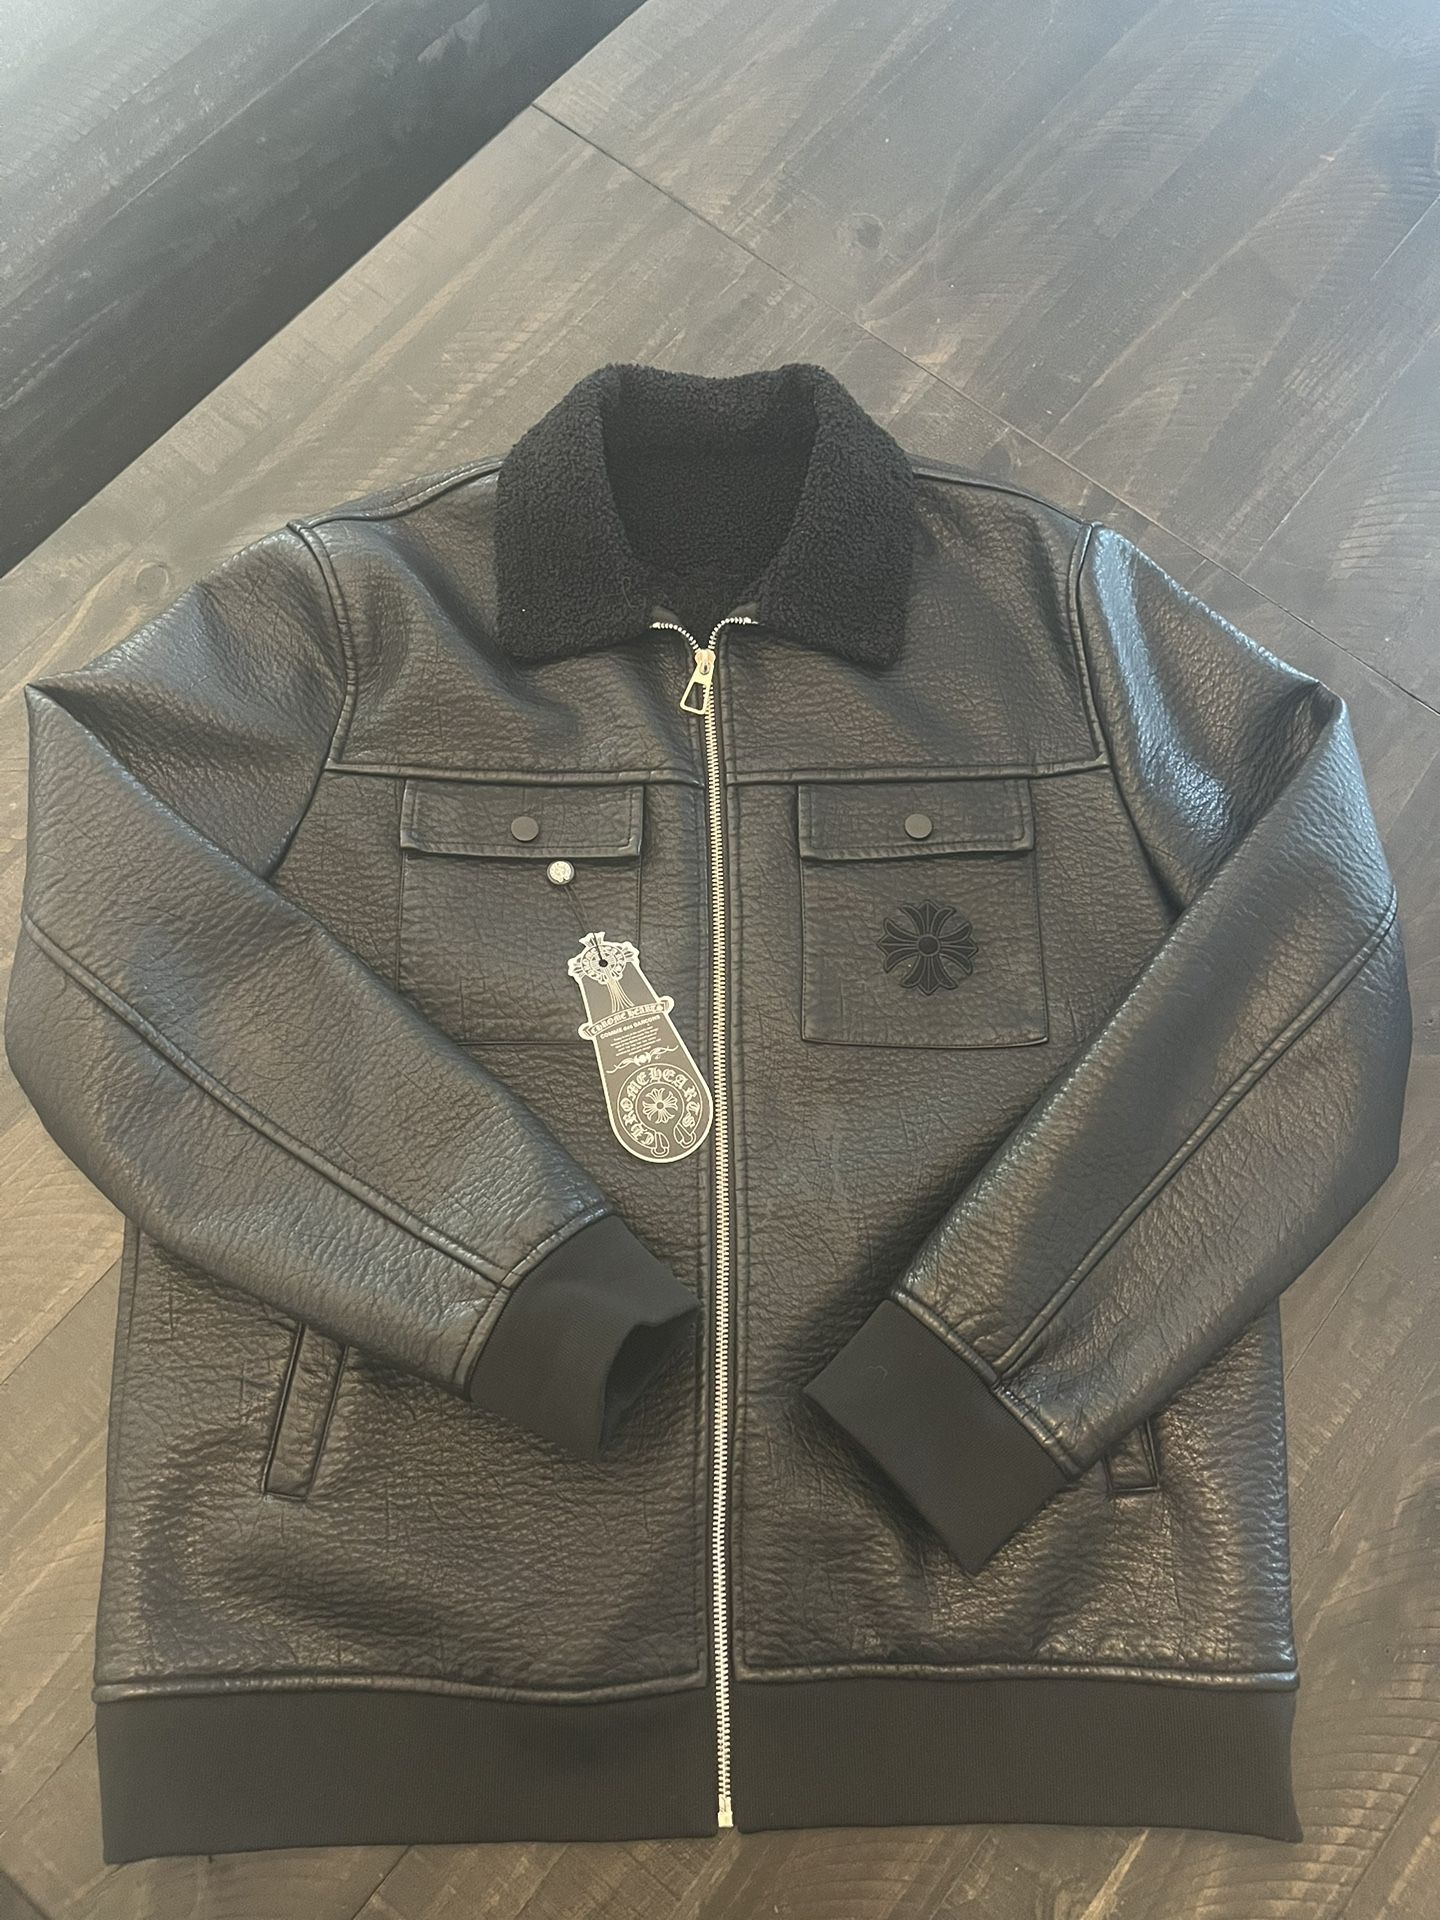 Leather Chromehearts Jacket Size Large 